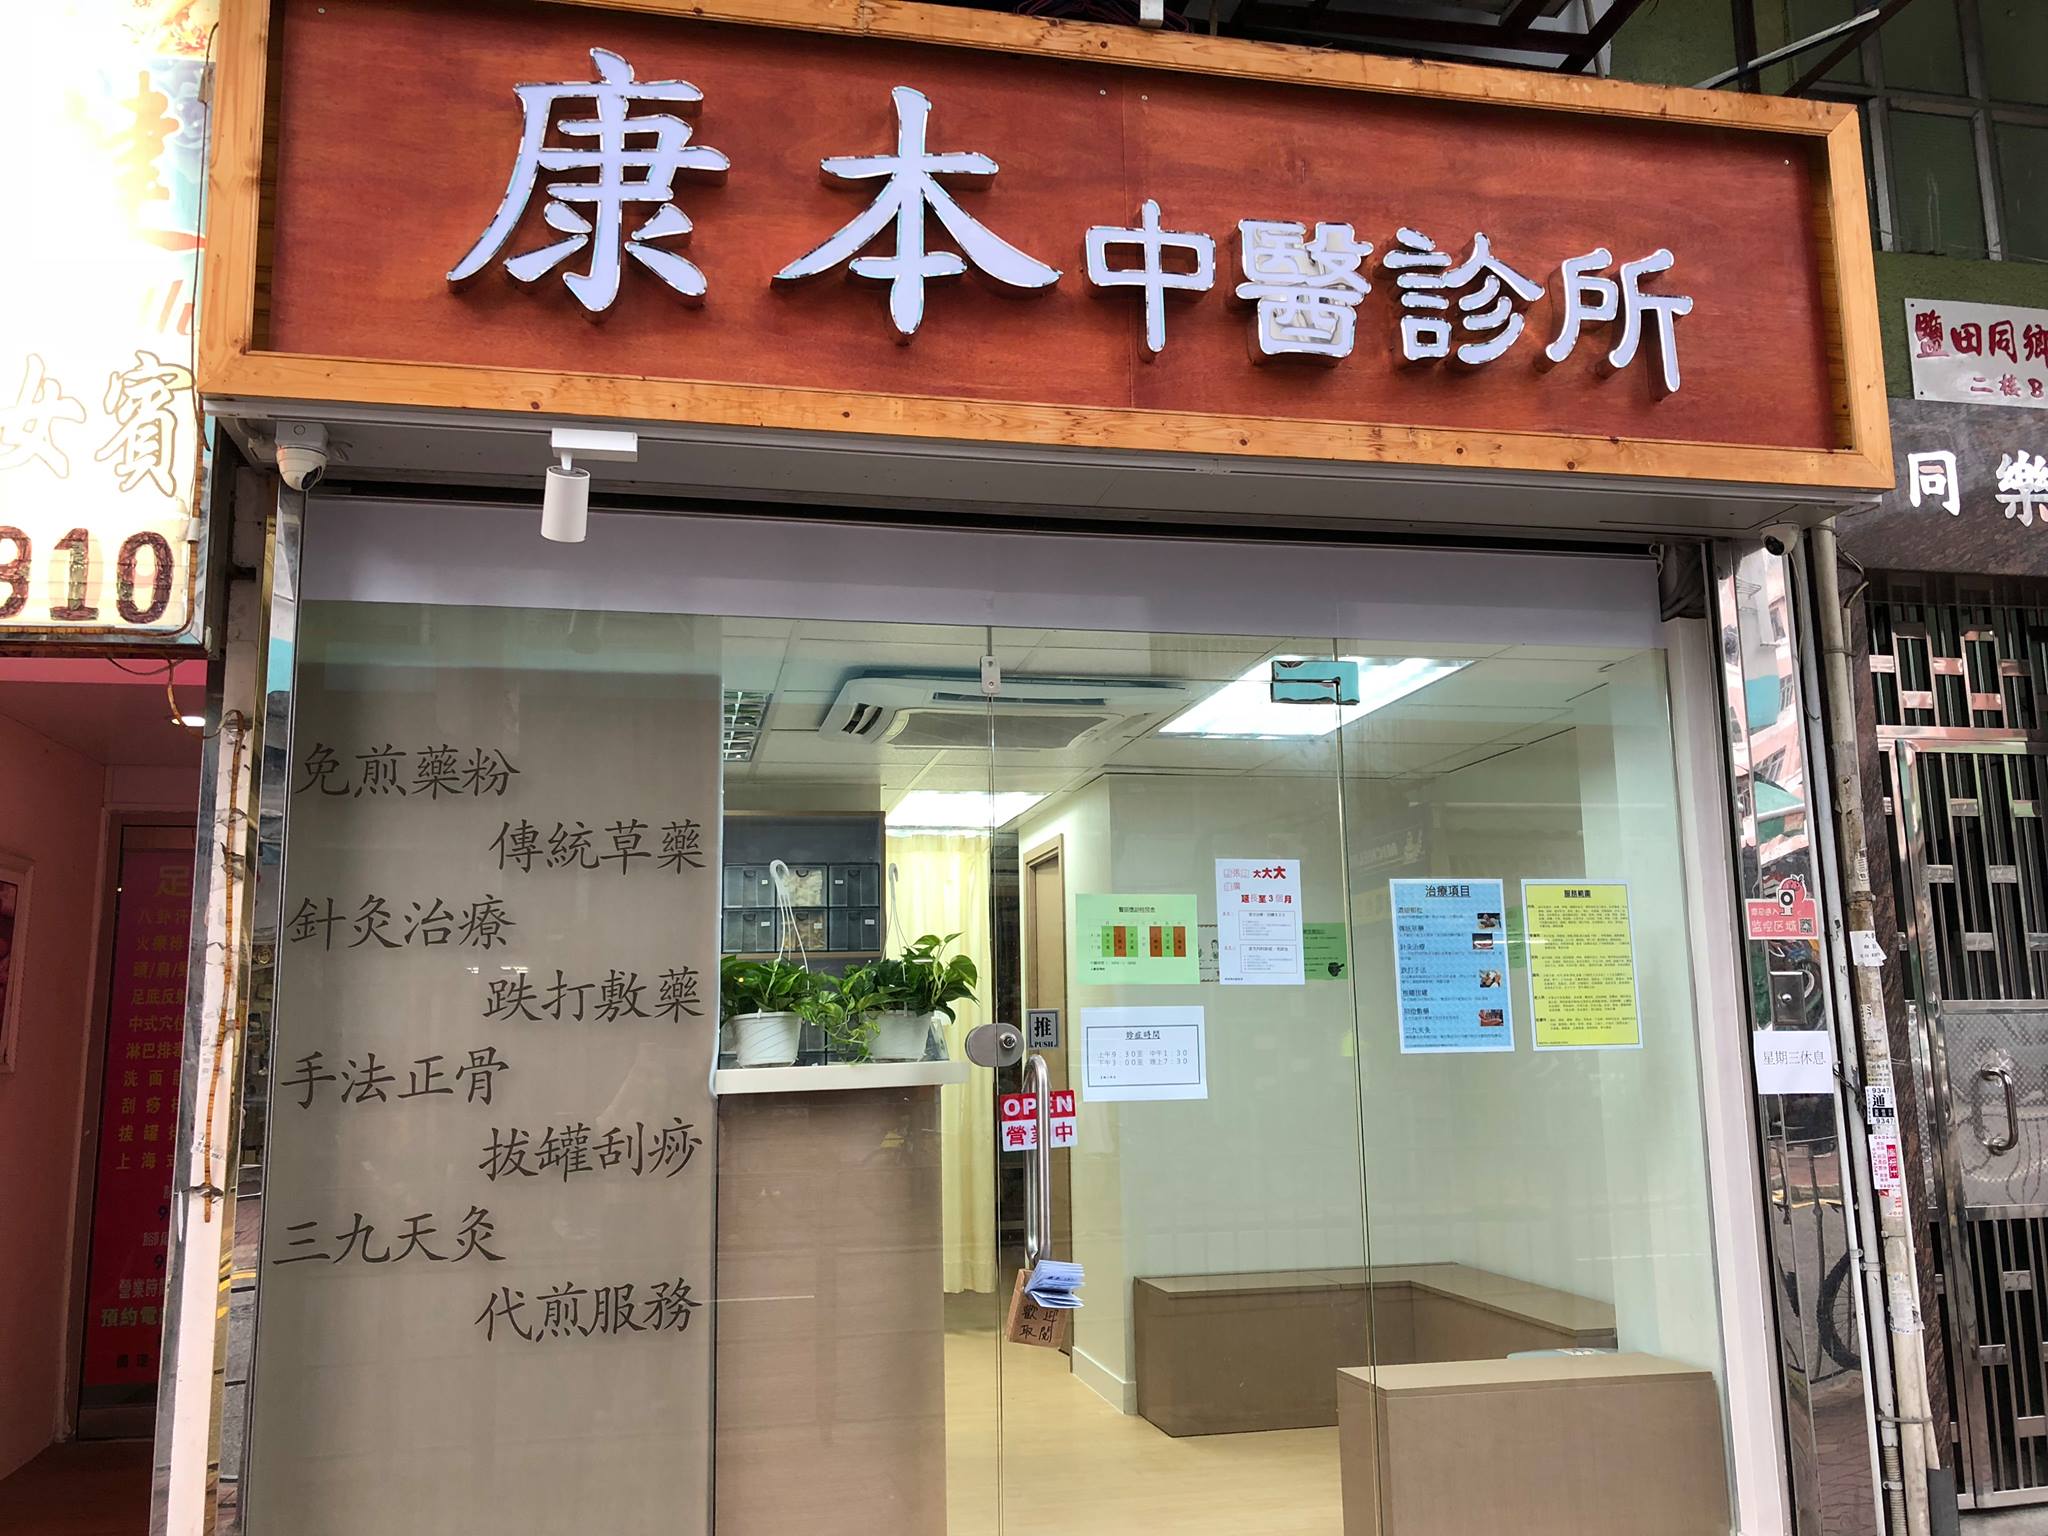 中醫兒科: 康本中醫診所